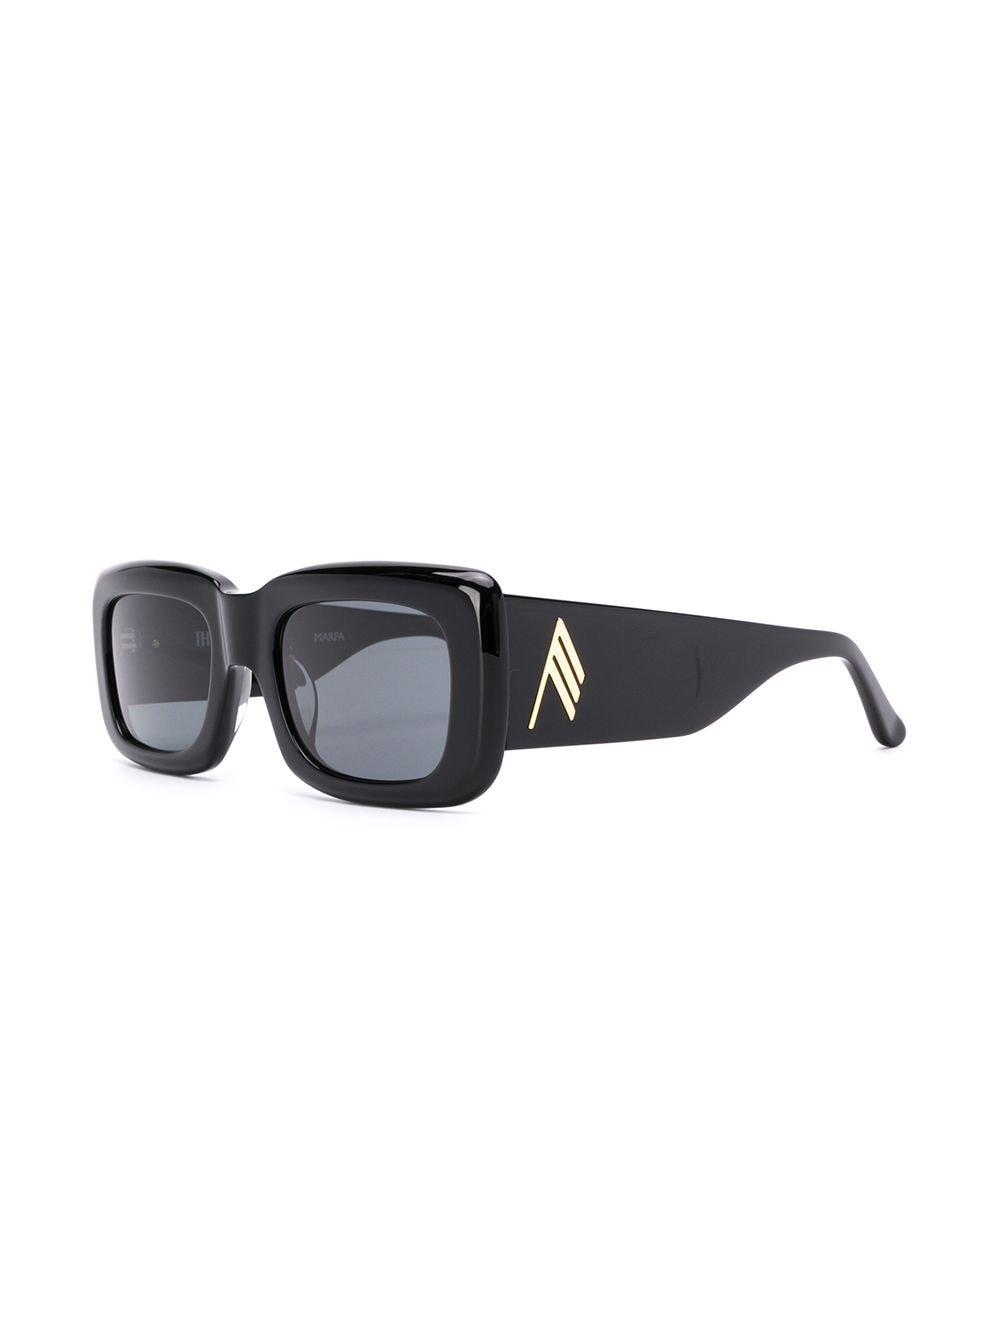 Linda Farrow Attico 3 Square Frame Sunglasses in Black - Lyst